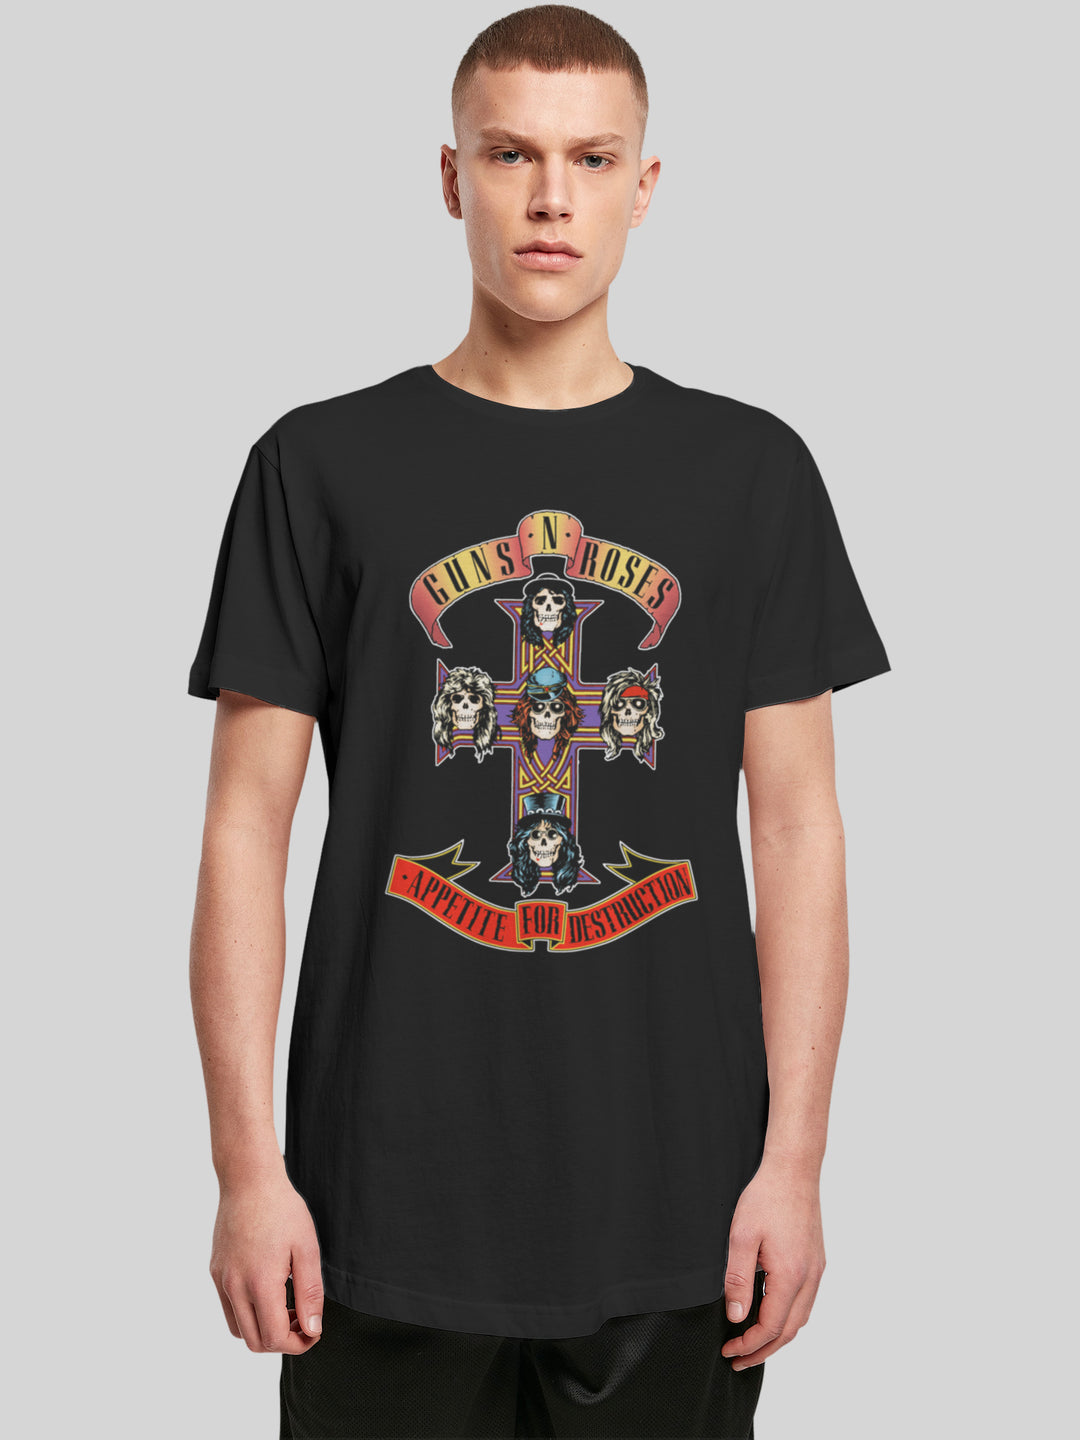 Guns 'n' Roses T-Shirt | Appetite For Destruction | Extra Long Men T Shirt